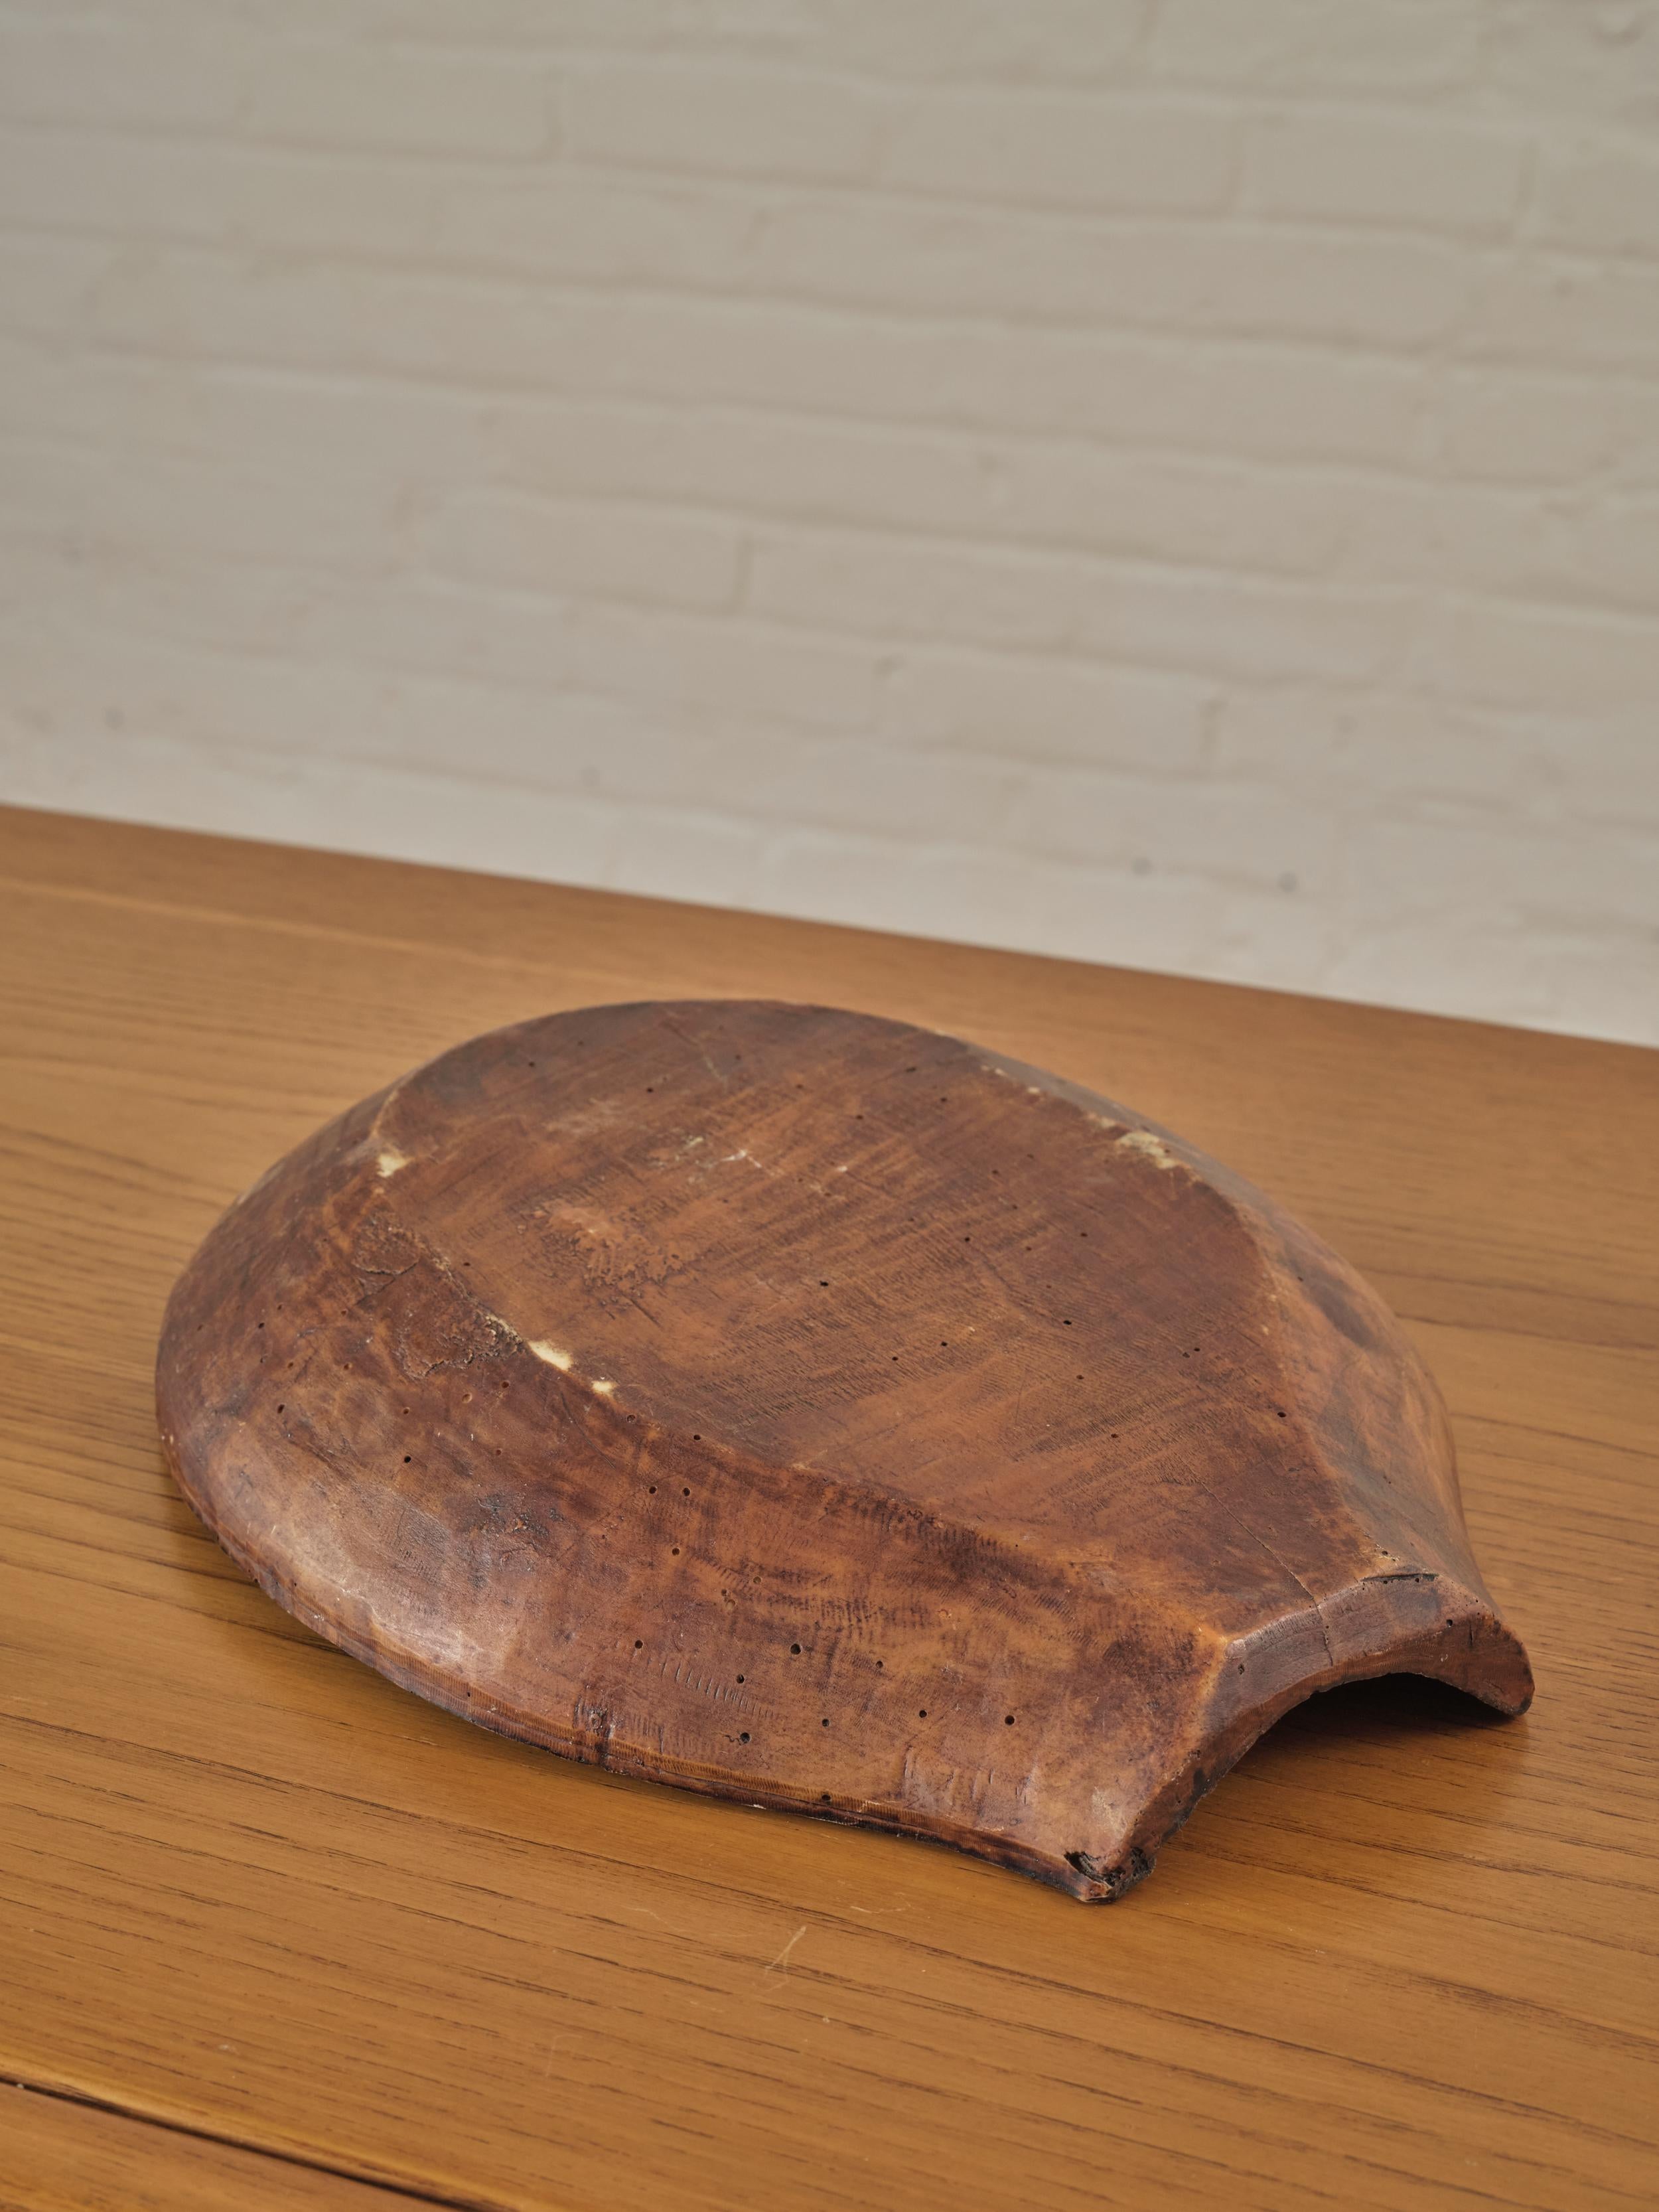 Un petit bol à pâte en bois africain avec une ouverture plate sur un côté.

